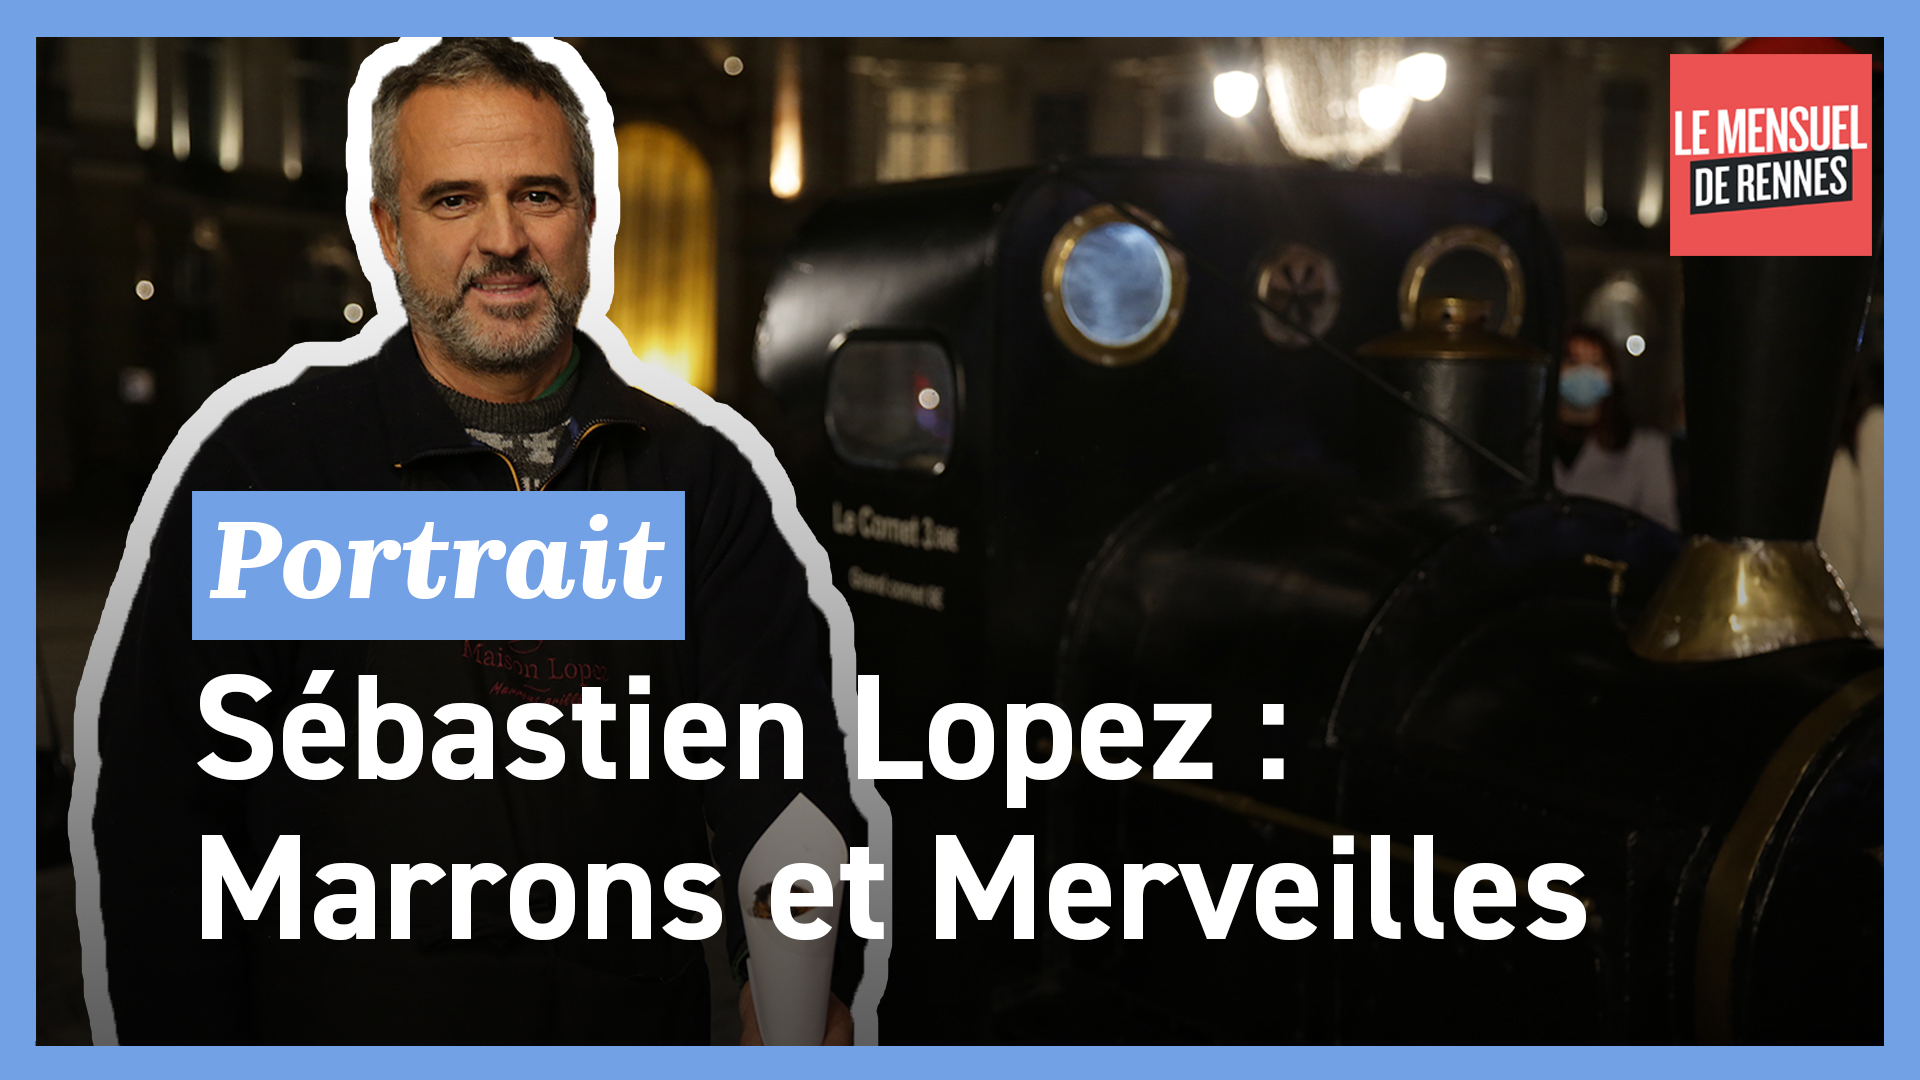 Portrait: Sébastien Lopez "Marrons et merveilles" (Le Télégramme)